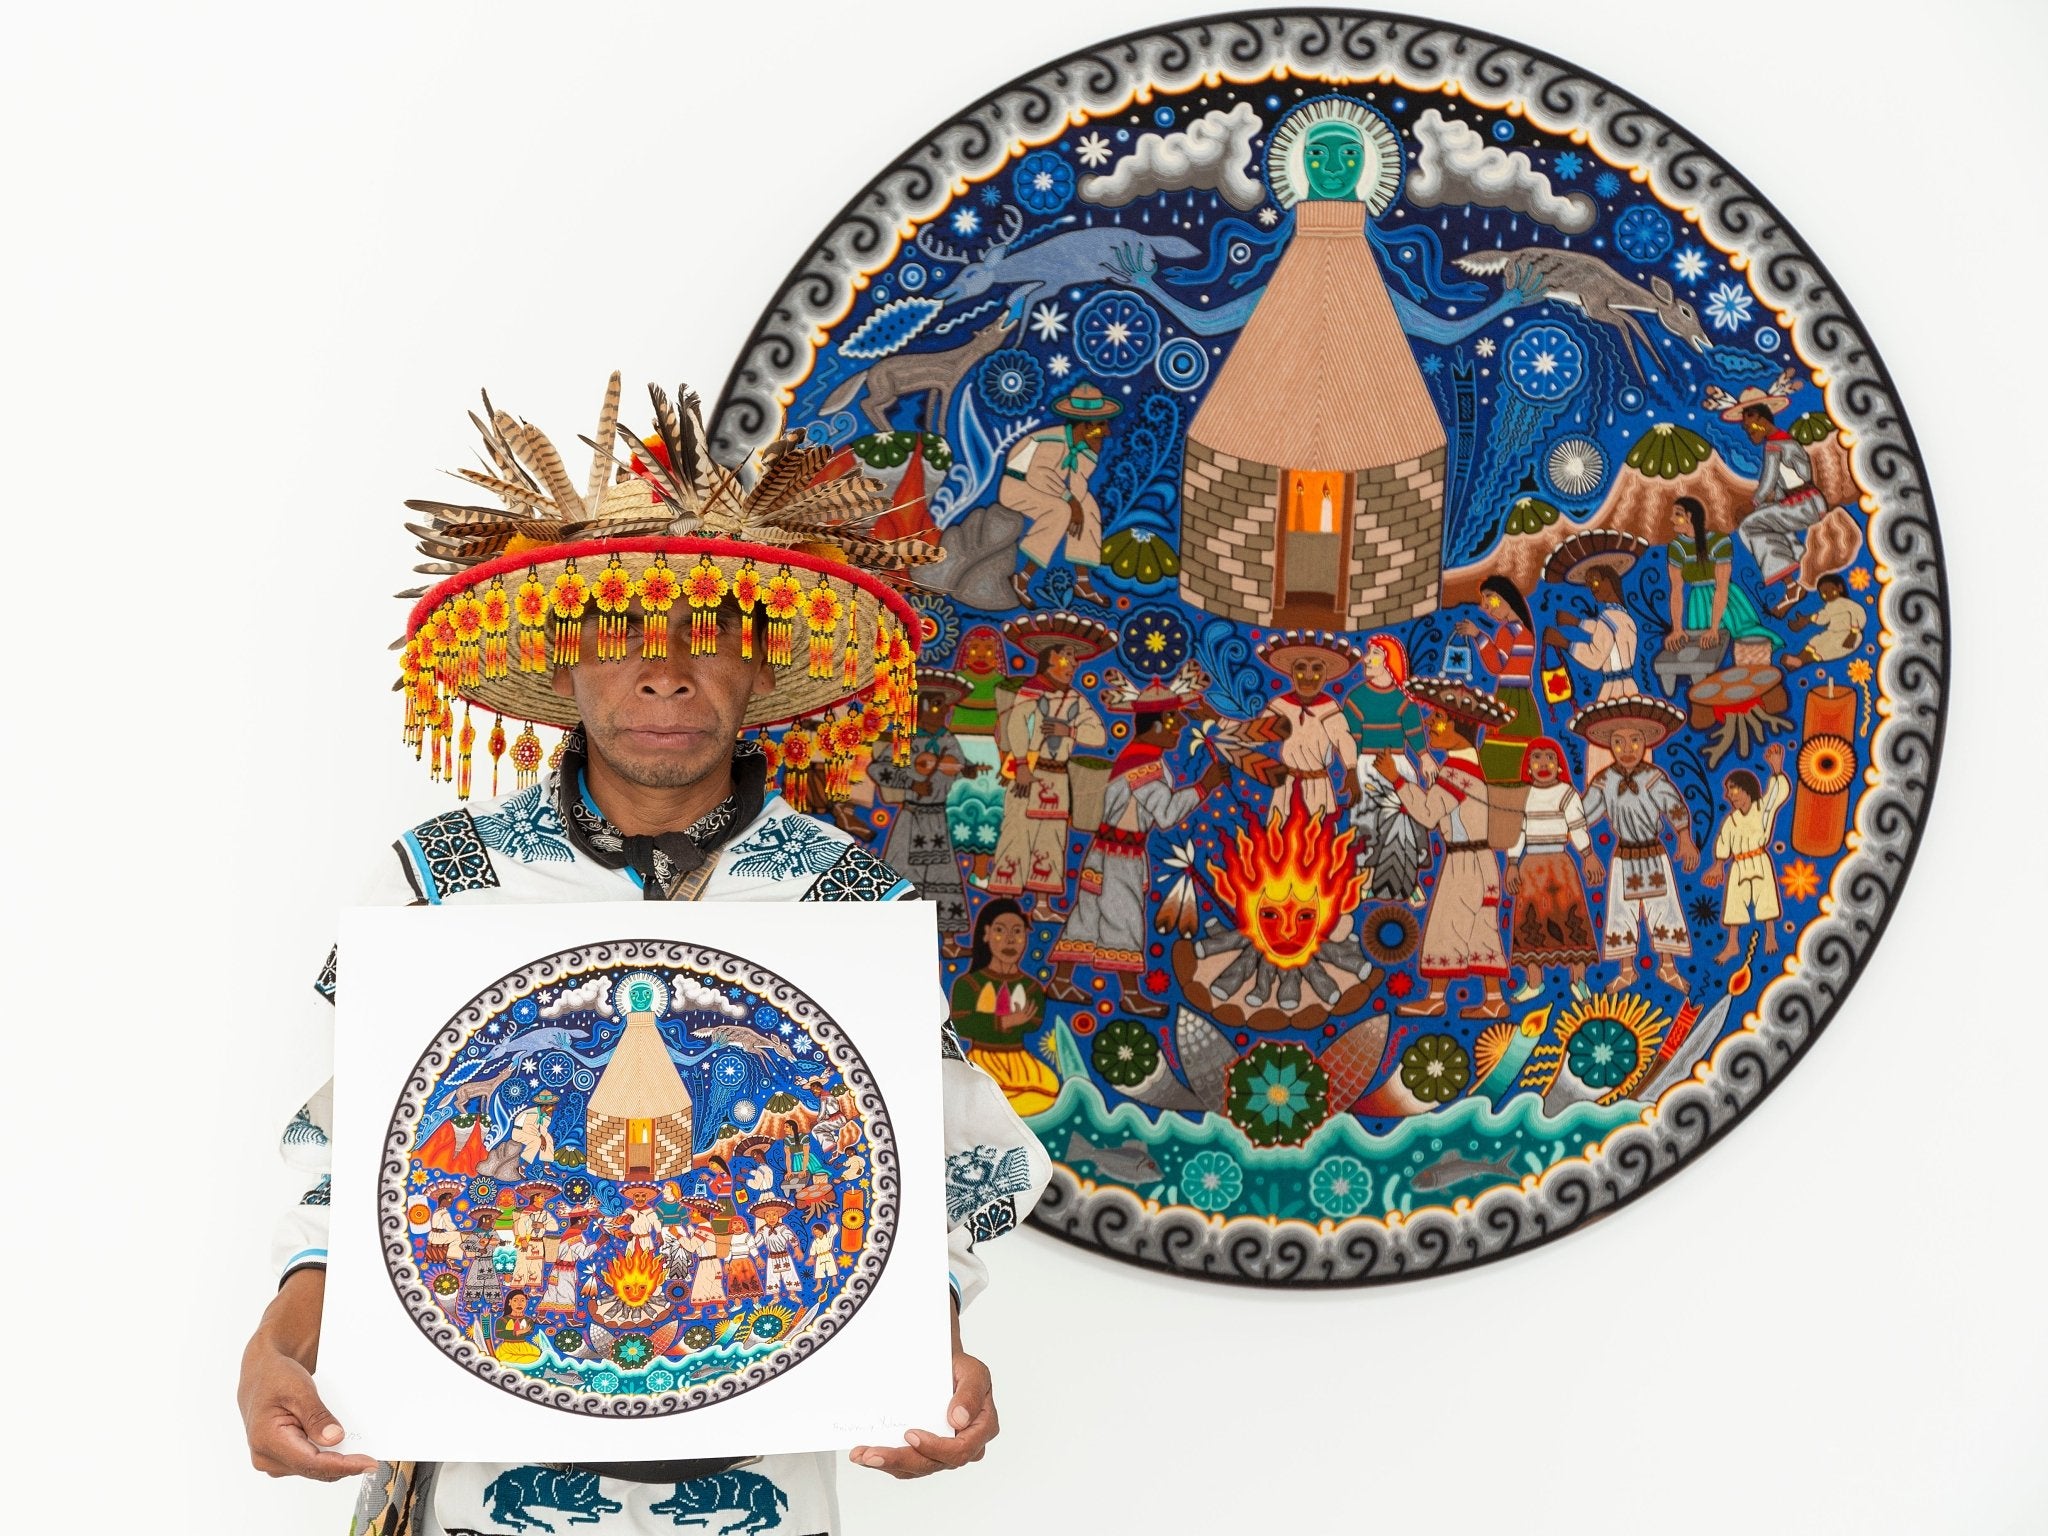 Hikuri Neixa - Peyote dance in ceremonial center - 45 x 45 cm. - 18 x 18 in. - Huichol Art - Marakame